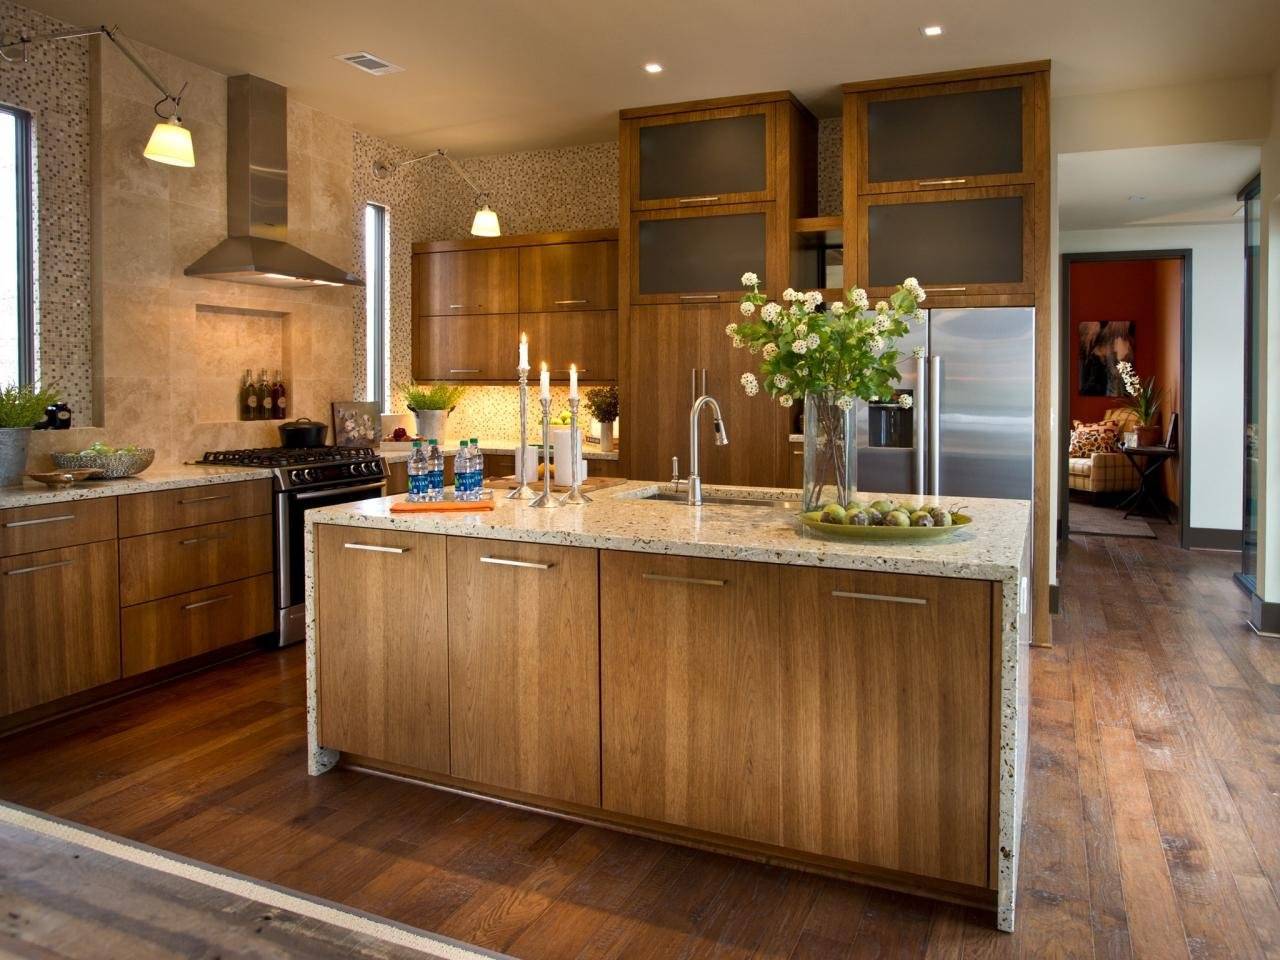 Плитка для кухни на пол для красивого дизайна + 150 фото